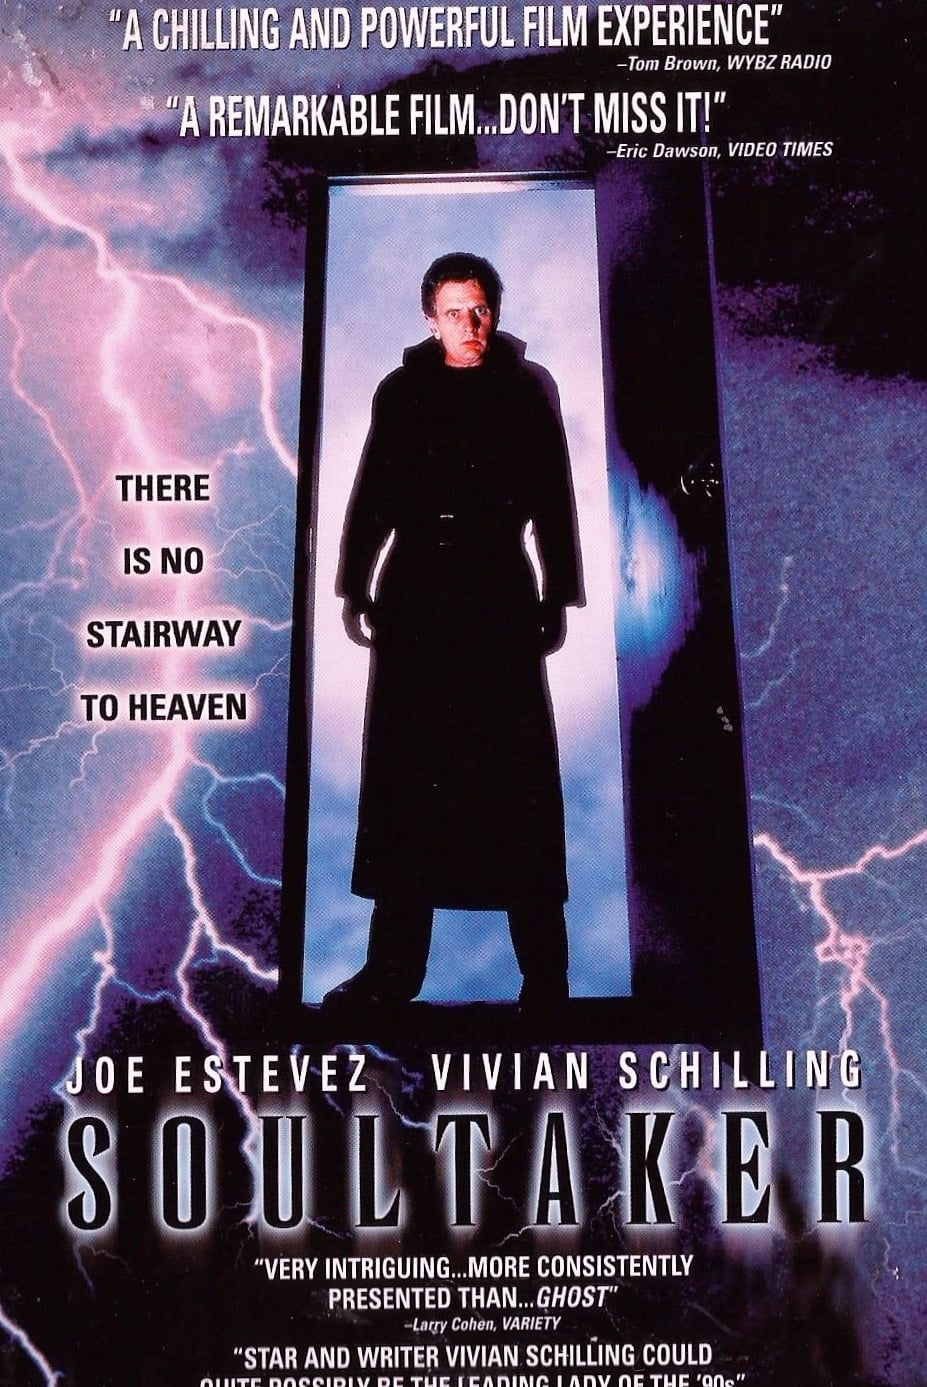 Soultaker (1990)